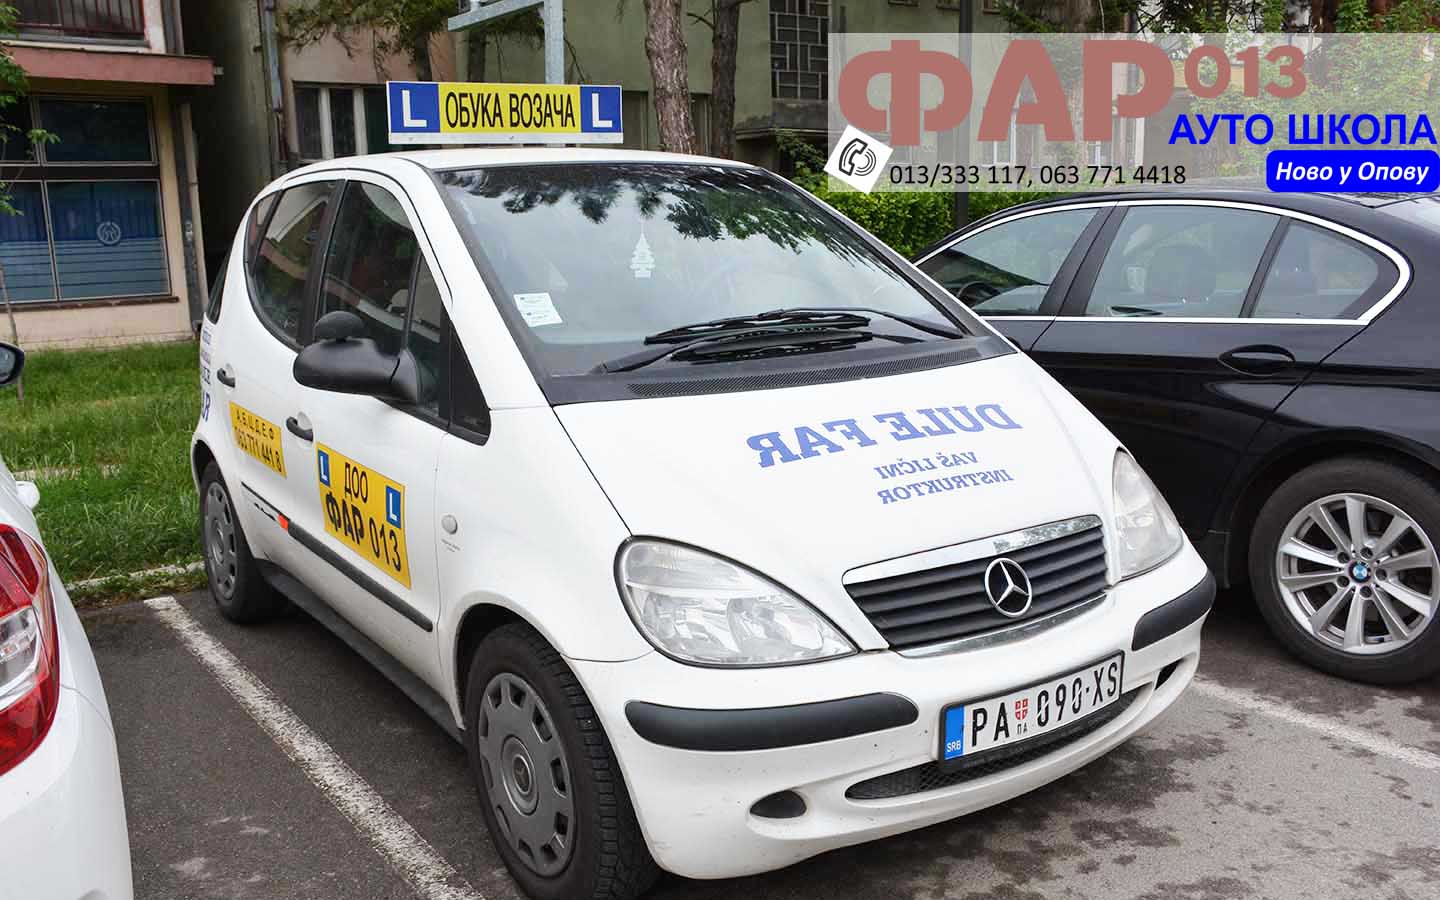 Auto škola FAR 013: Obuka u Opovu na novoj adresi